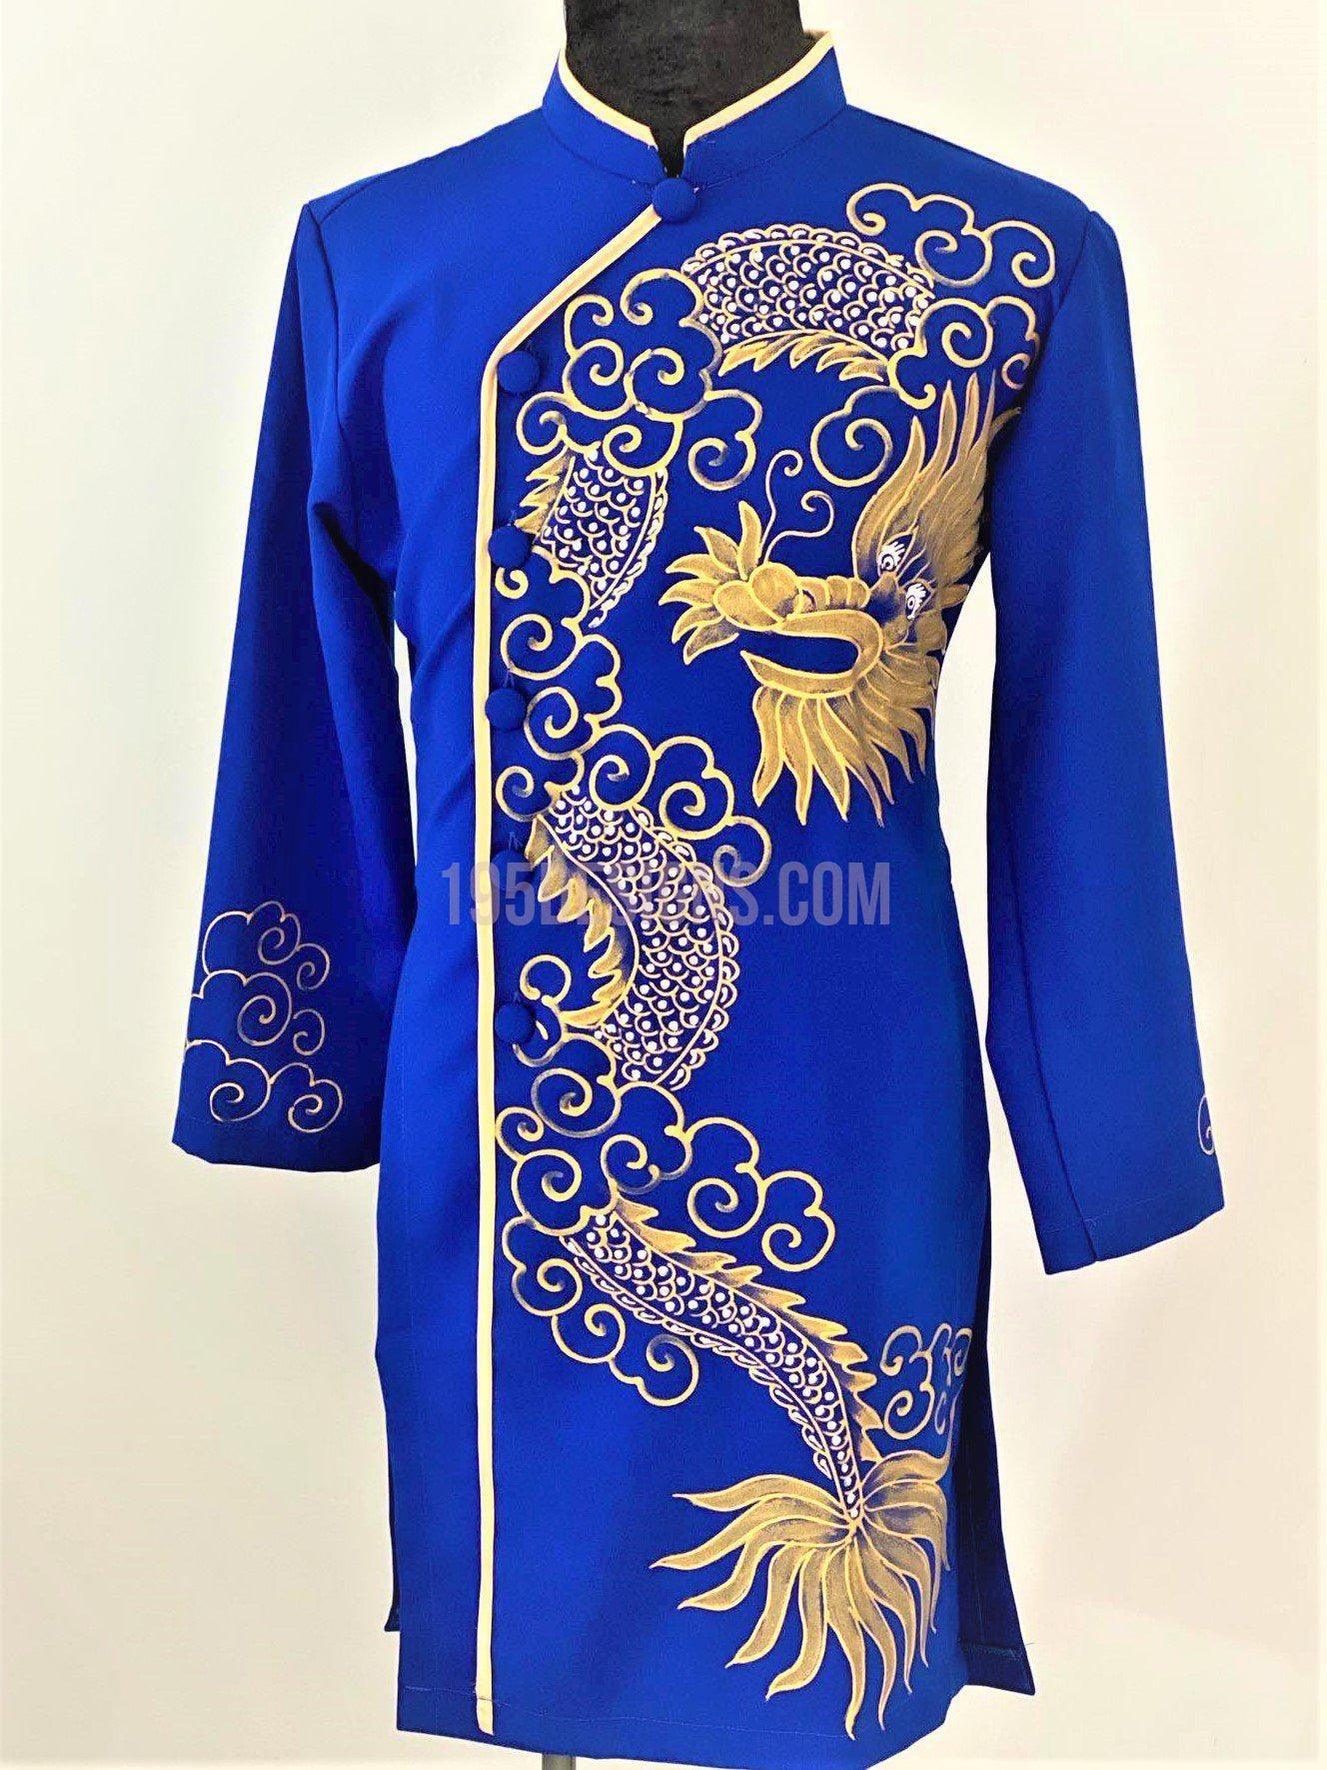 Áo Dài Xanh Nam Vẽ Rồng (Men\'s Blue Ao Dai with Dragon Design): Với sự kết hợp tuyệt vời giữa màu xanh và hình ảnh rồng đầy sức mạnh, áo dài nam xanh vẽ rồng sẽ mang đến cho bạn một vẻ đẹp đầy trang phục. Hãy mặc áo dài nam vẽ rồng và cảm nhận sự tự tin tuyệt đối từ bản thân.